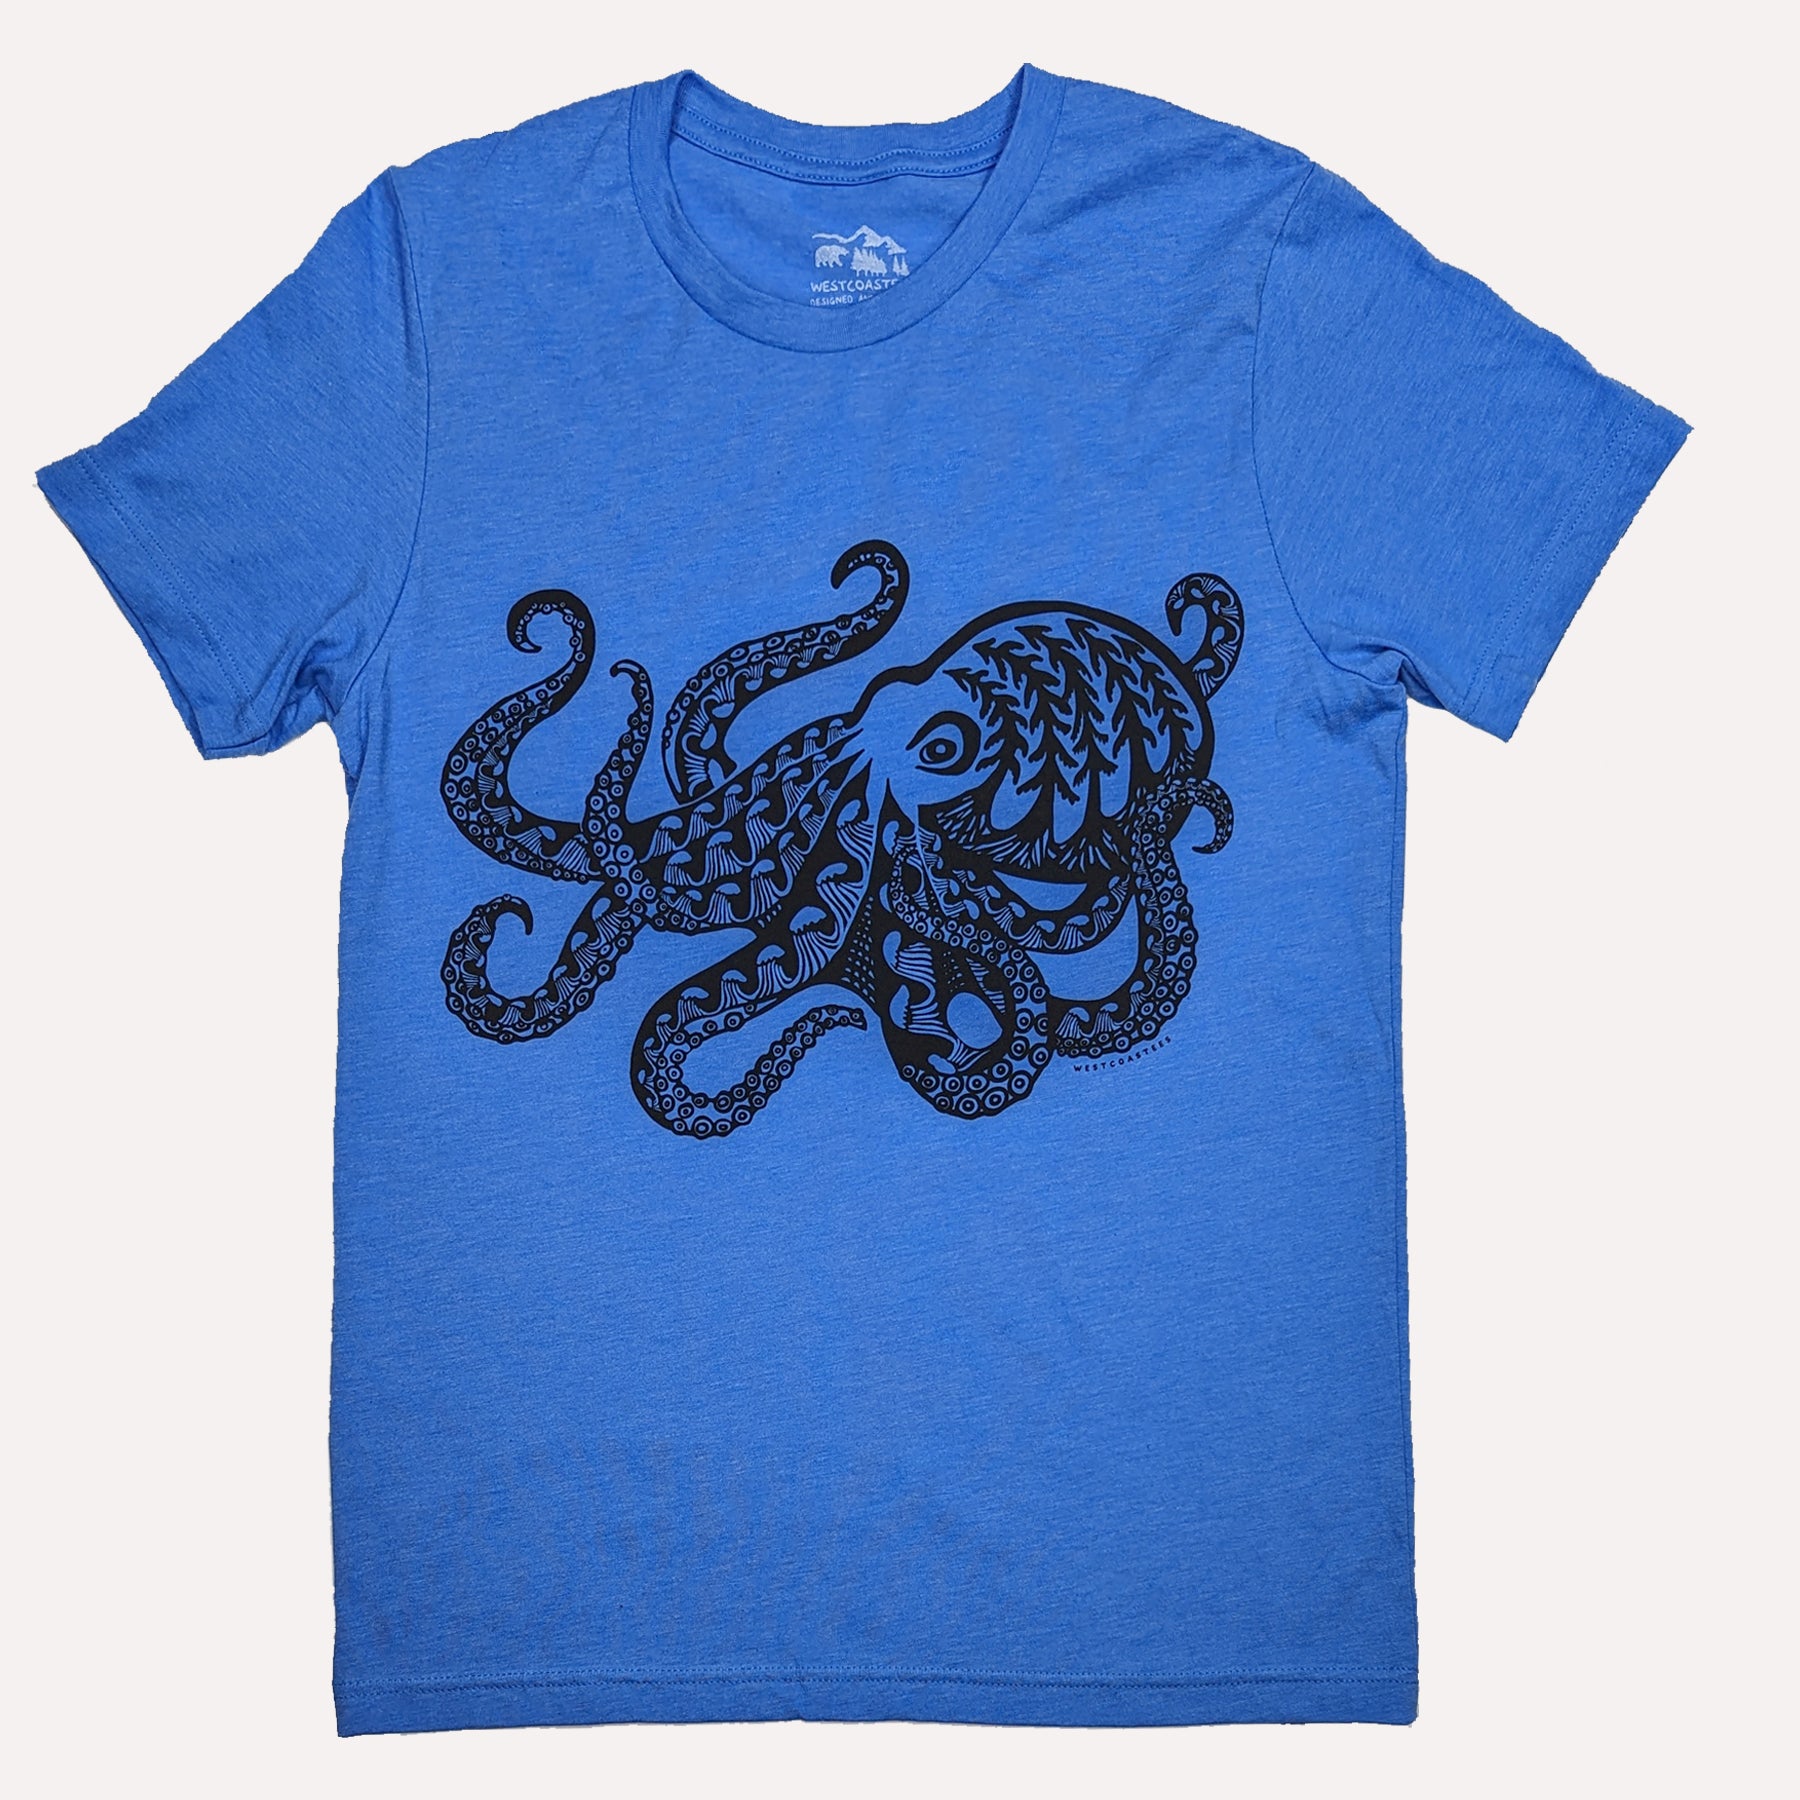 Adult Unisex Forest Octopus T-shirt, ADULT UNISEX TEE'S, Westcoastees, www.westcoastees.com